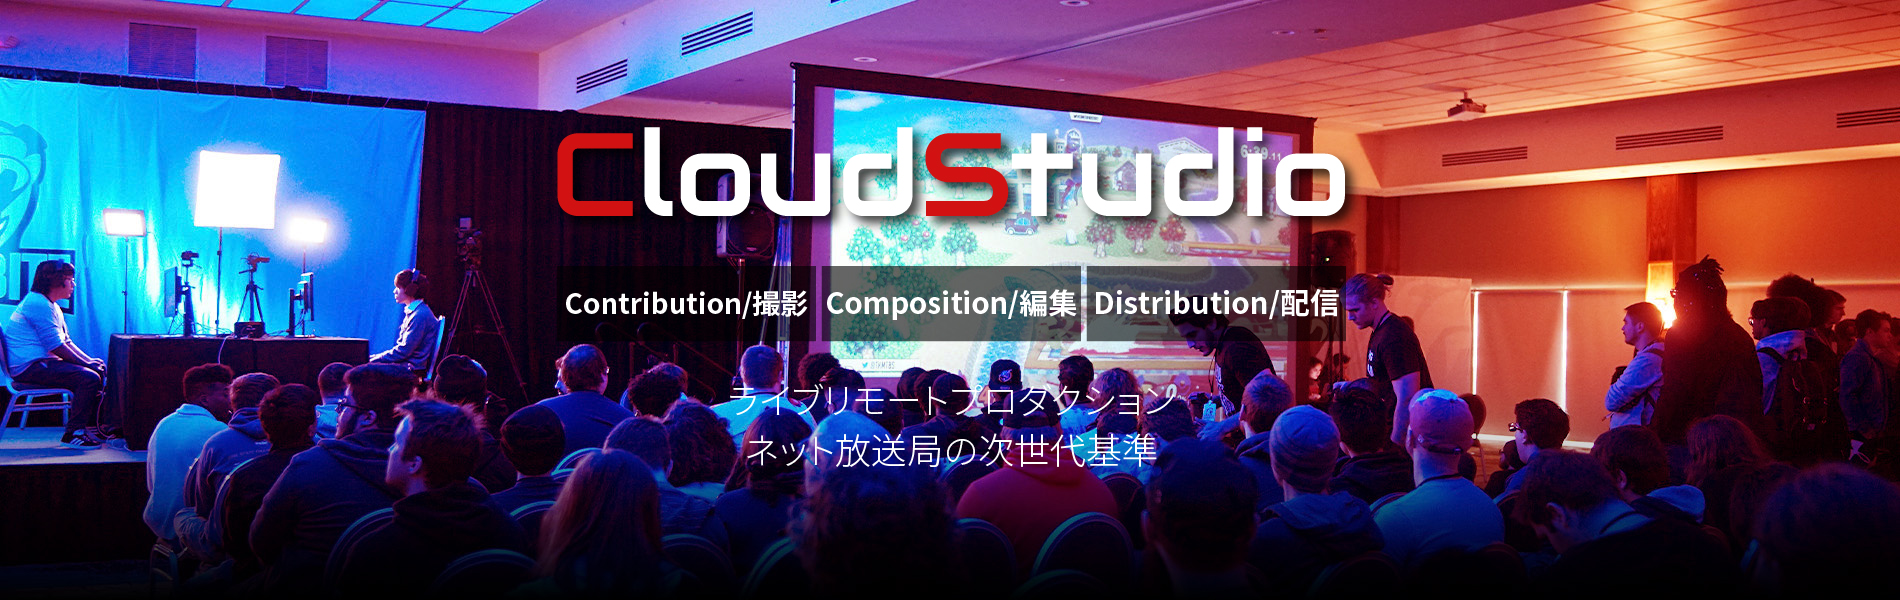 CloudStudio